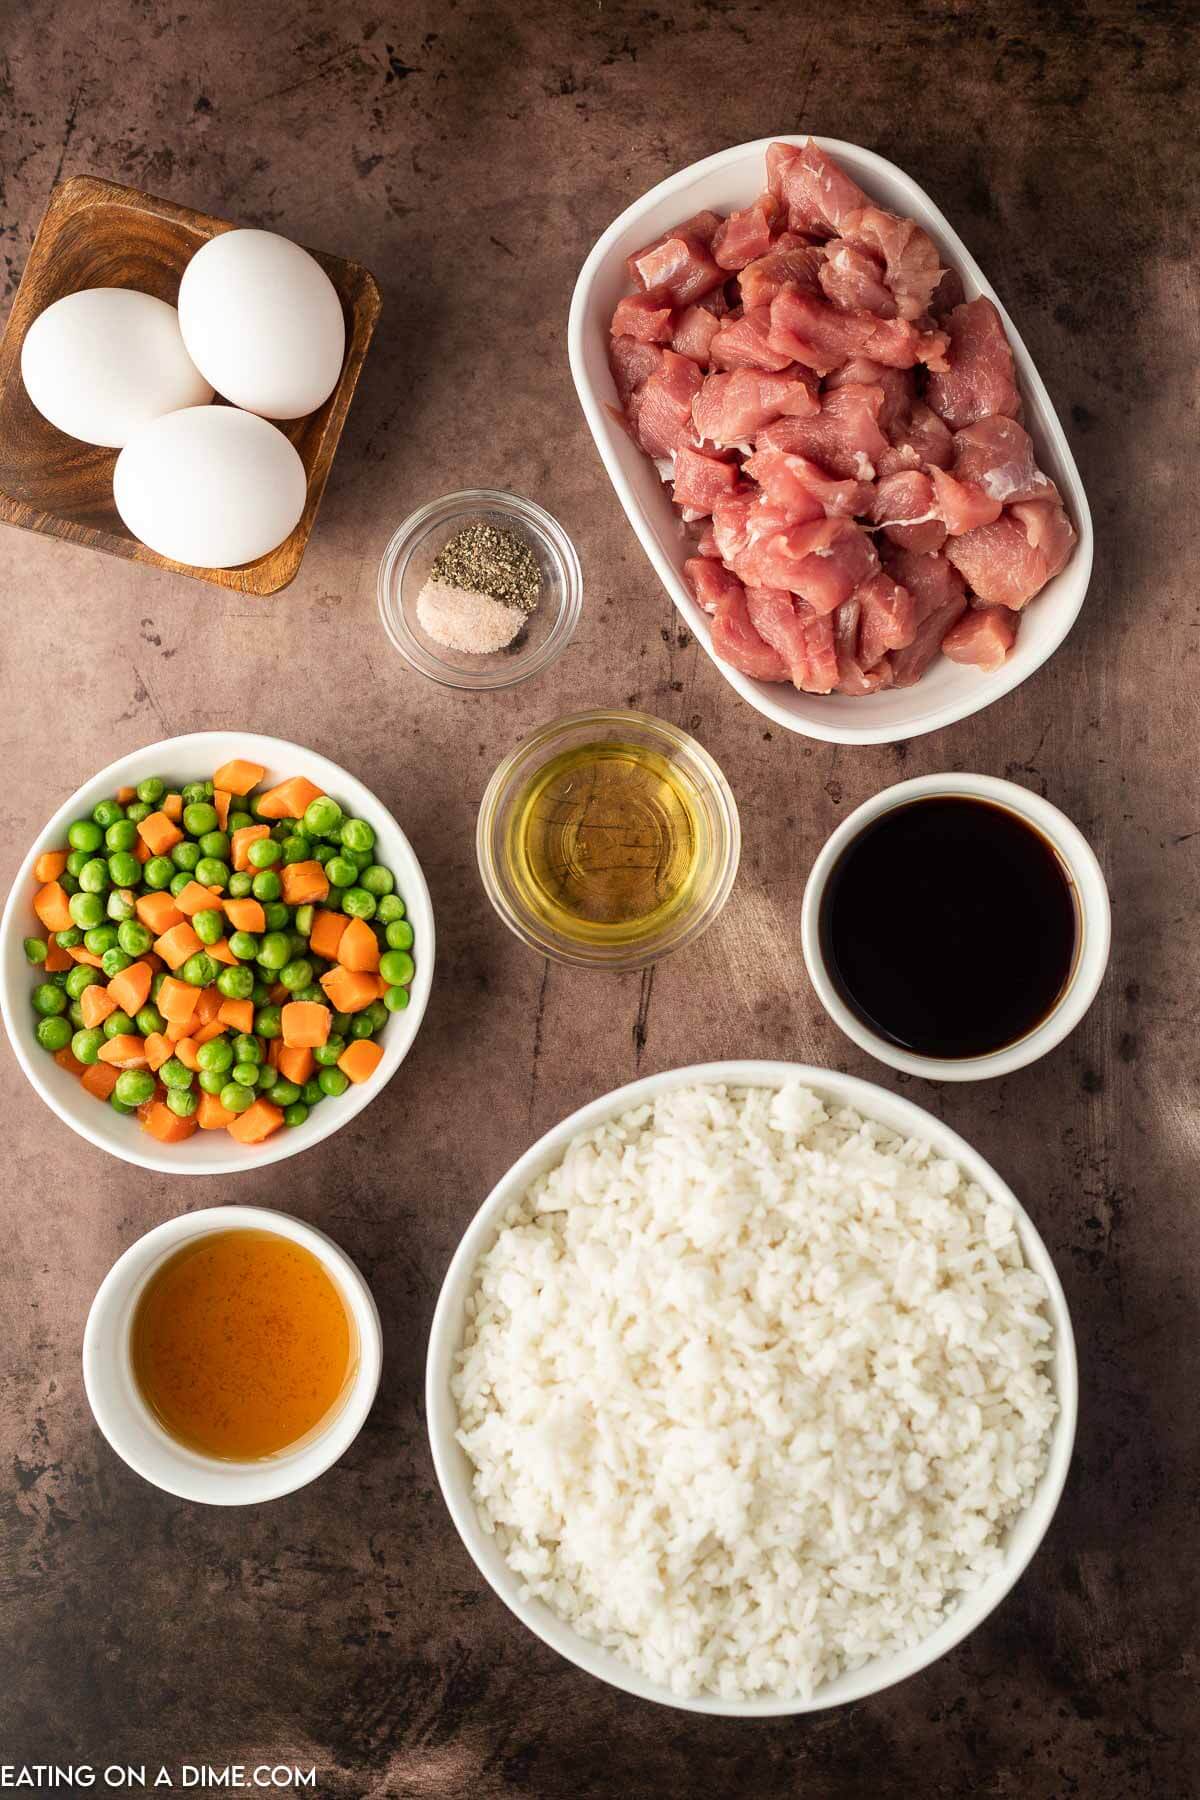 Ingredients needed - pork tenderloin, sesame oil, vegetable oil, cooked rice, soy sauce, salt and pepper, frozen veggies, egg, green onions